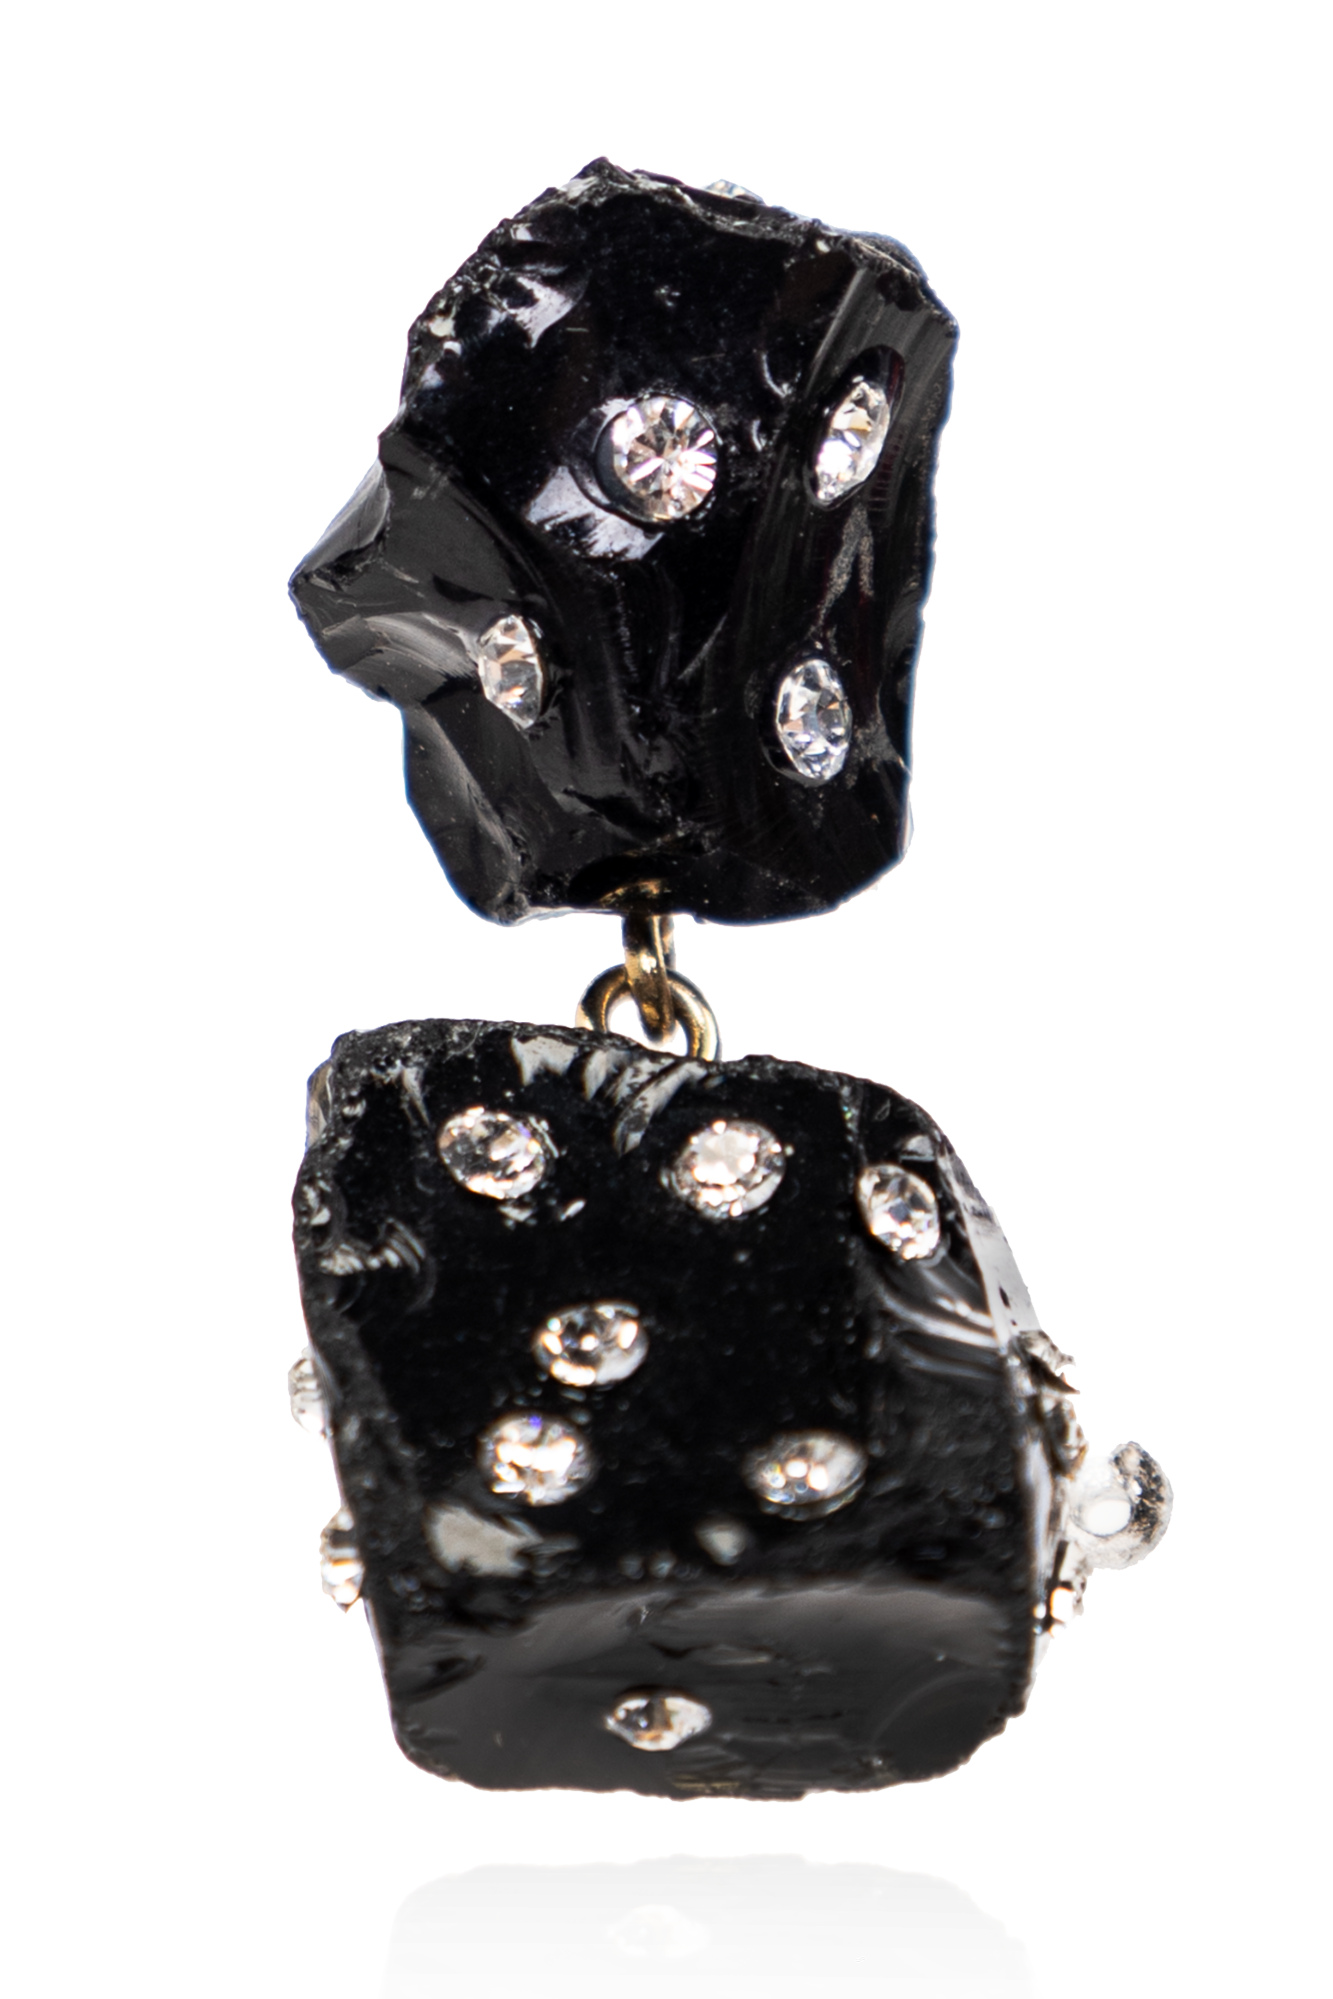 Marni Obsidian earrings